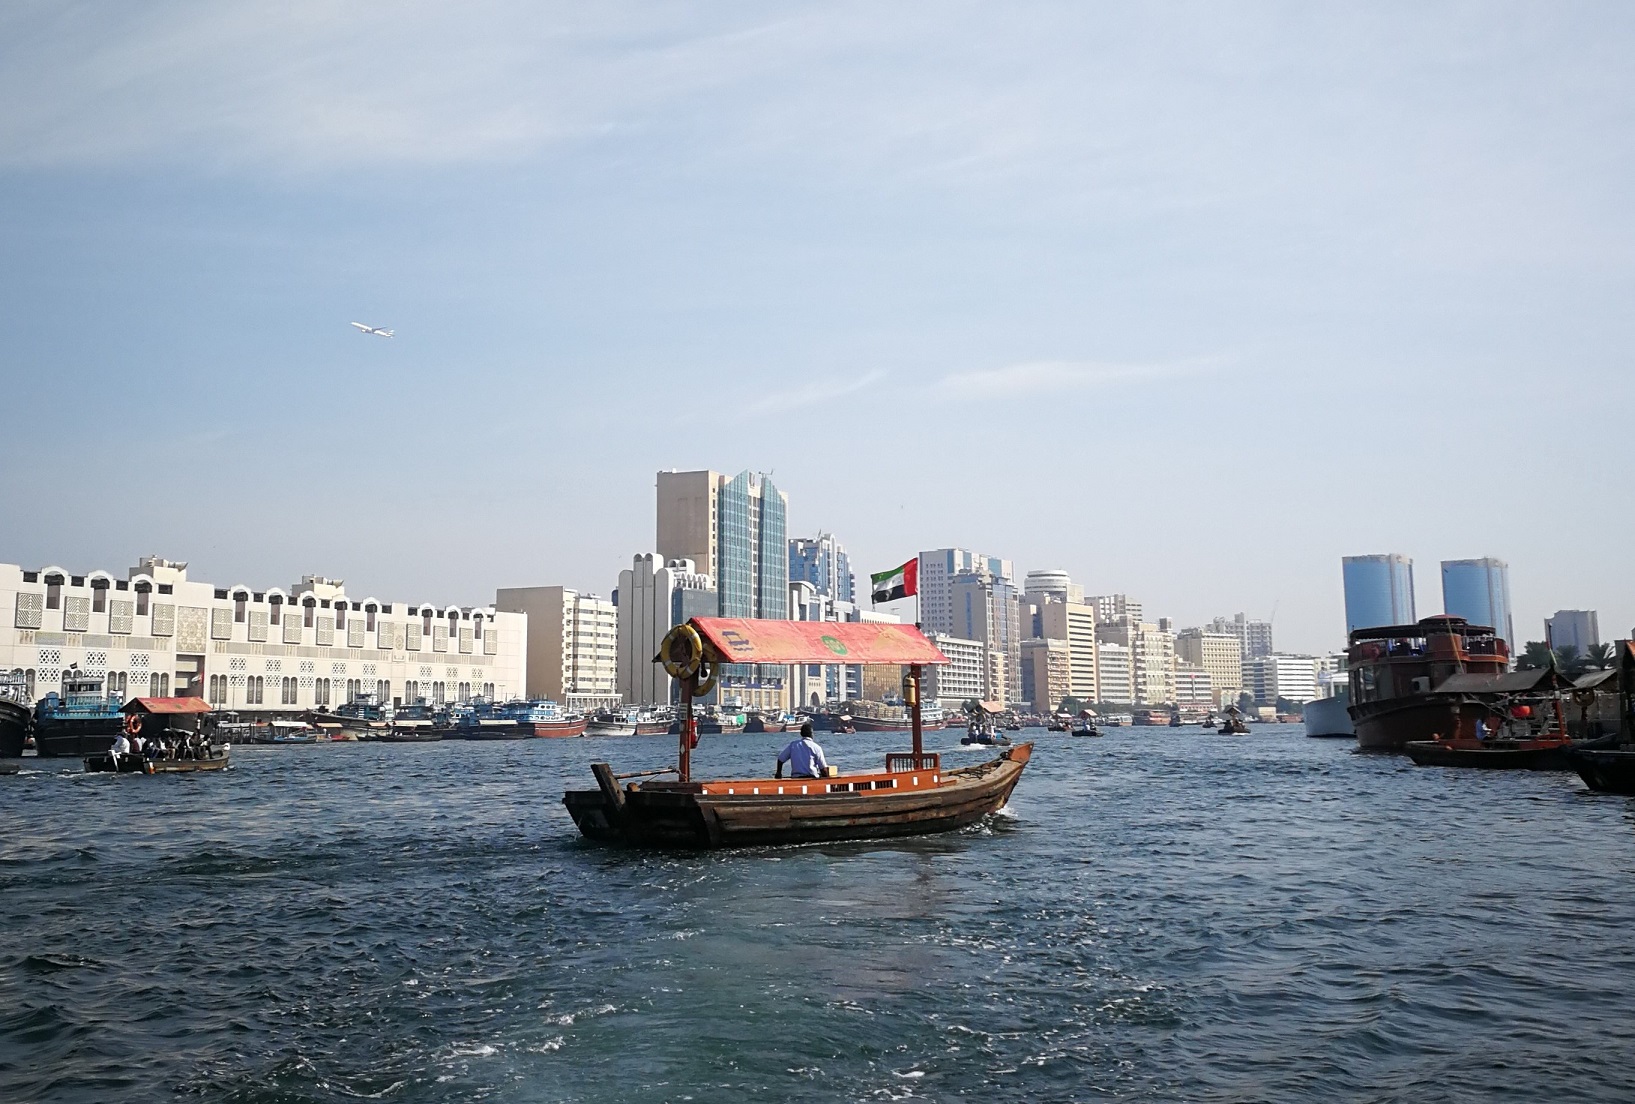 Dubai abra creek gita in barca durante viaggio combinato in 3 paesi